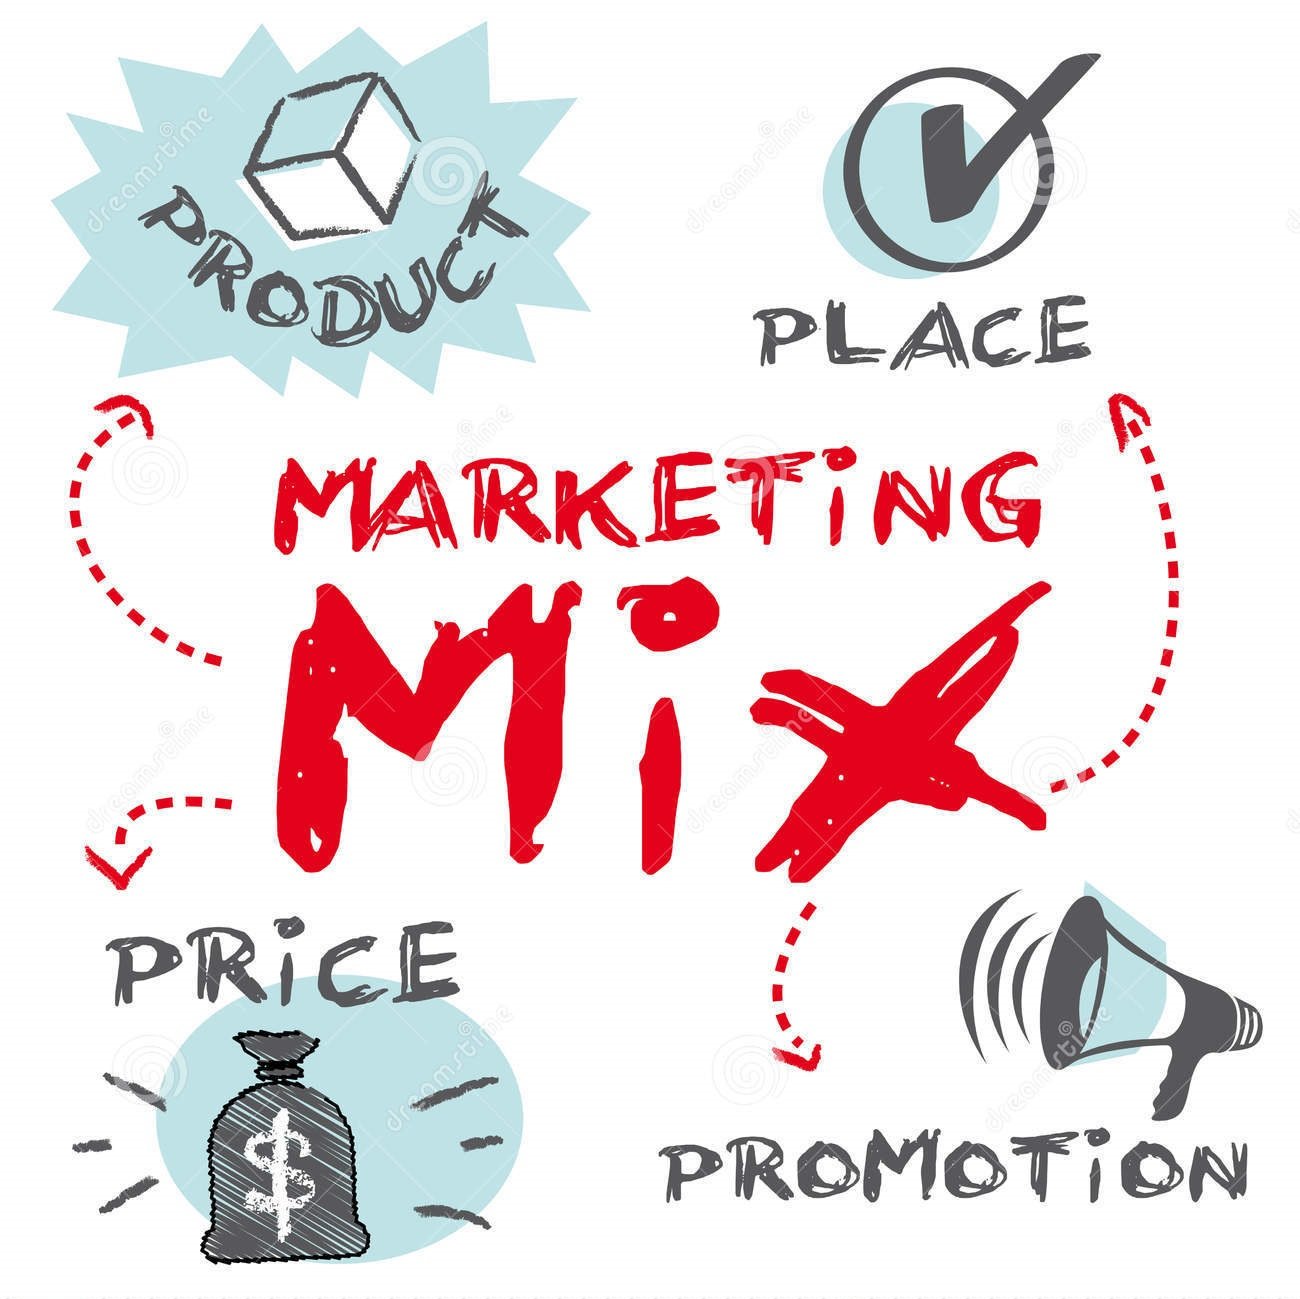 Pengertian Marketing / Pemasaran Beserta Konsep, Strategi dan Tugasnya